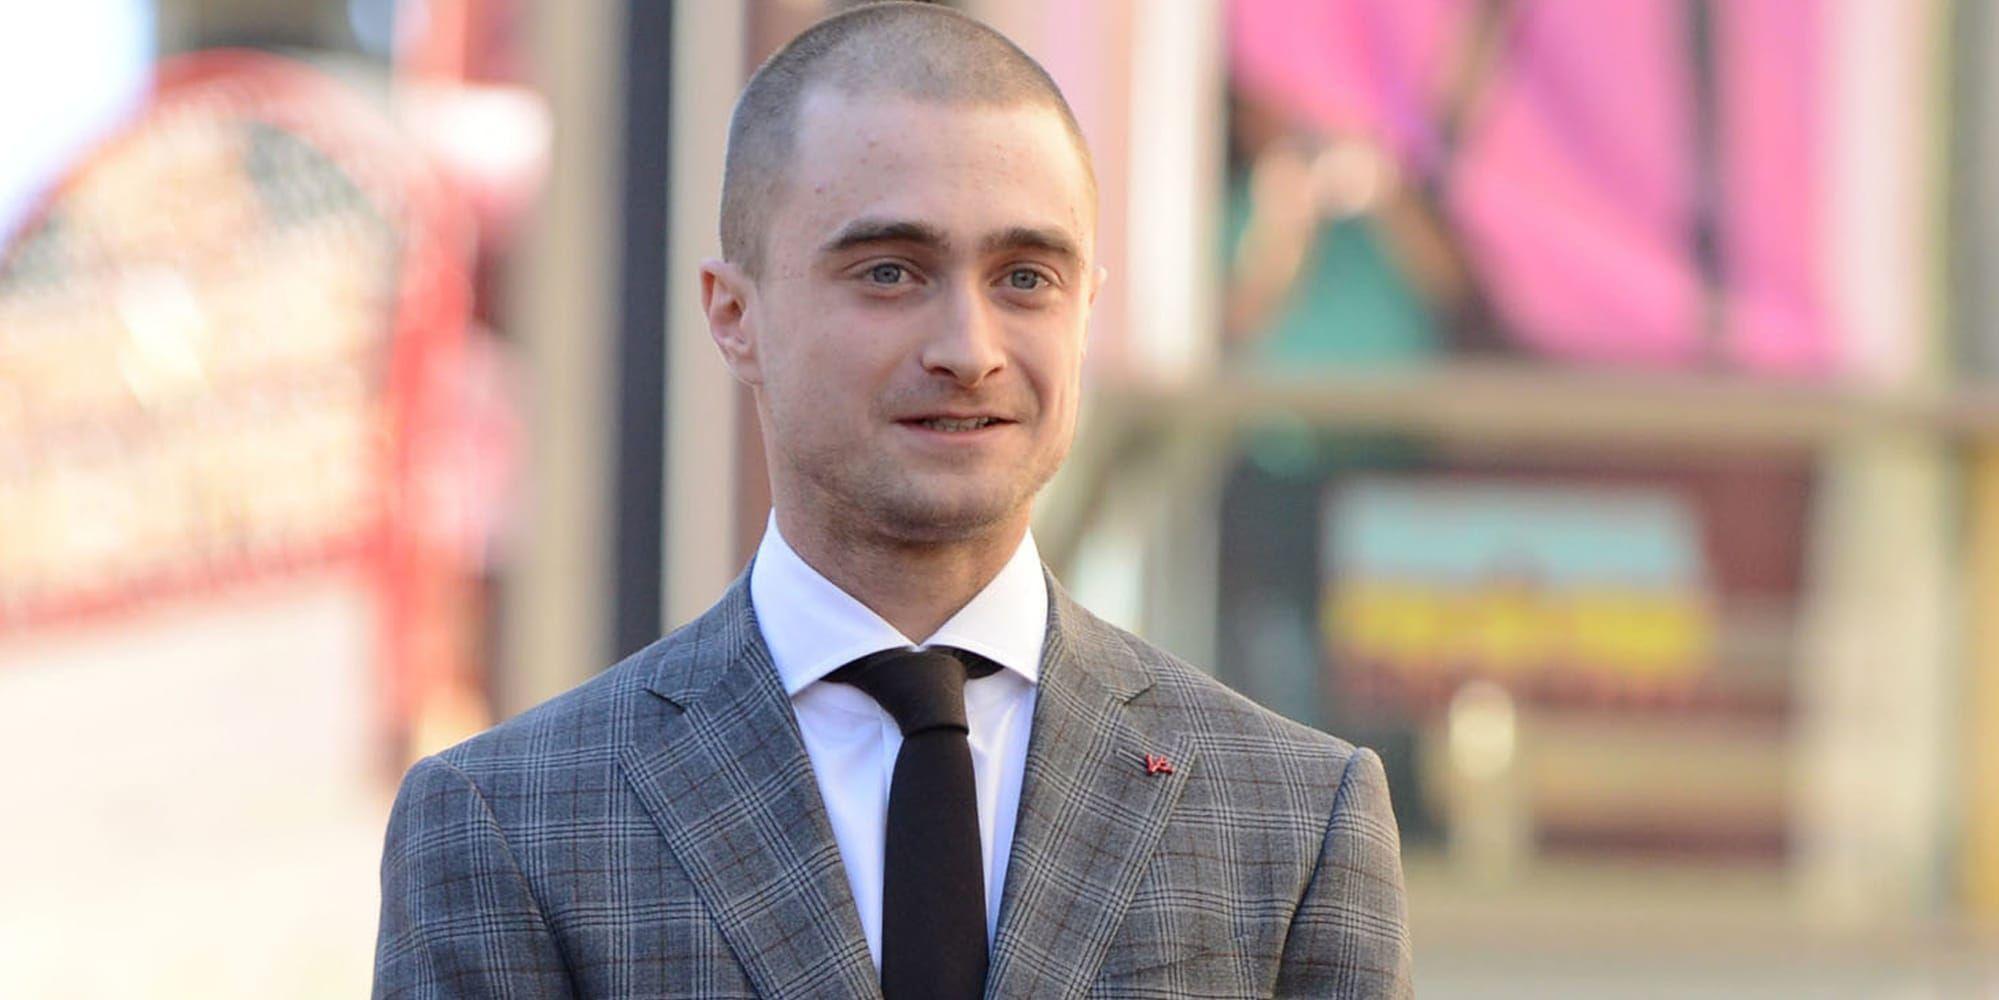 Daniel Radcliffe upprörs över lönegapet mellan manliga och kvinnliga skådespelare.